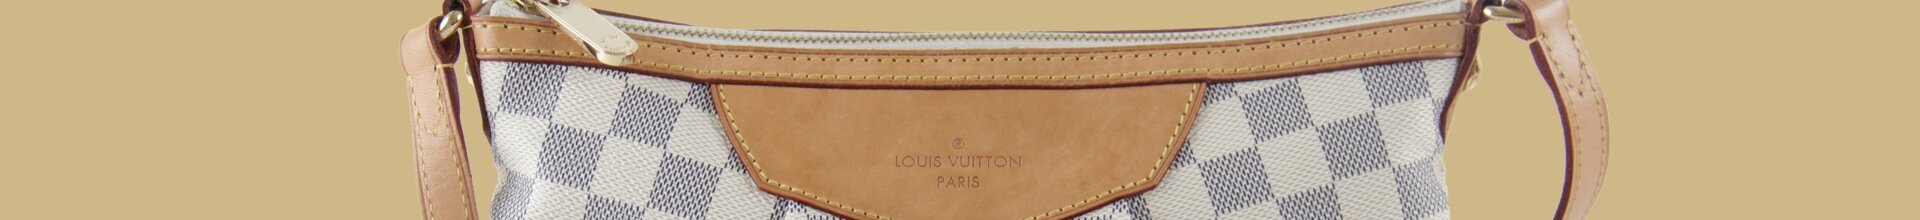 Louis Vuitton Tasche Pouch Denim weiß mit grauem Monogram Lederfassung gelb